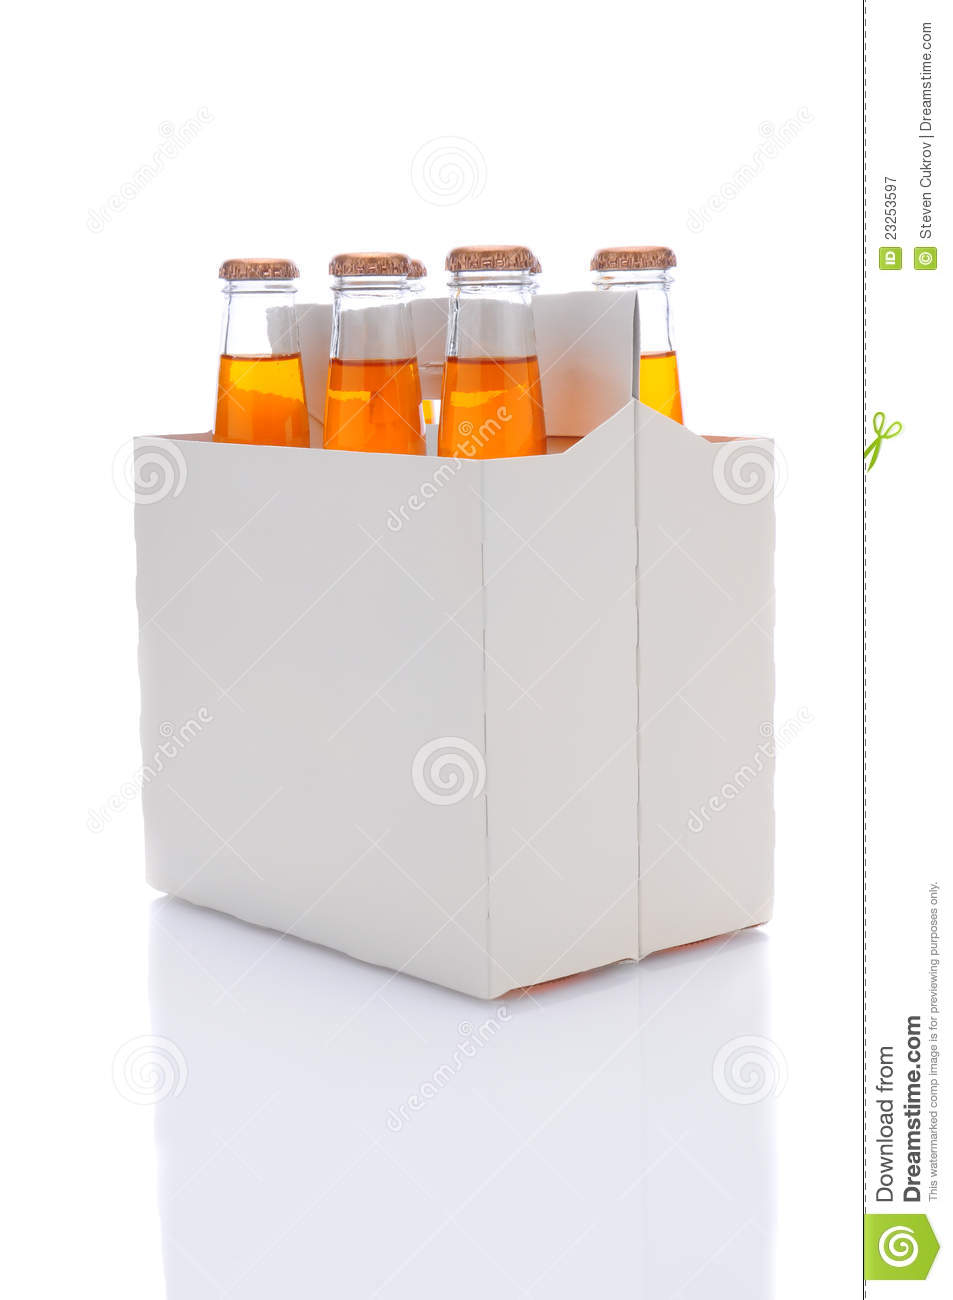 Six Pack Of Orange Soda Bottles Royalty Free Stock Photography   Image